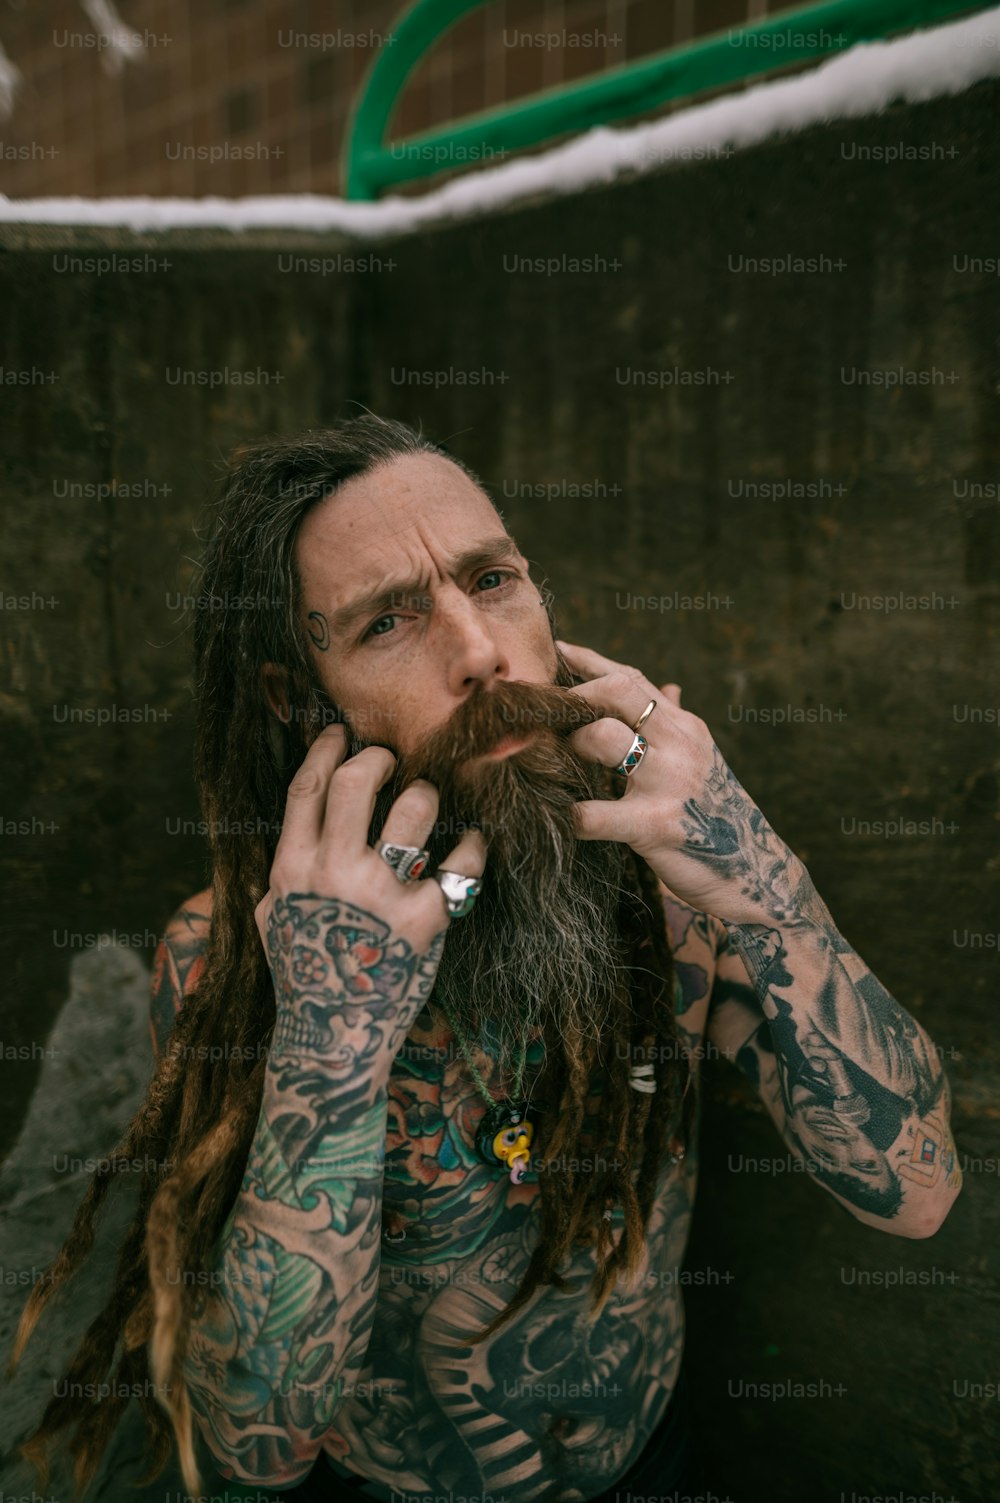 Ein Mann mit langen Haaren und Tattoos im Gesicht spricht auf einem Handy